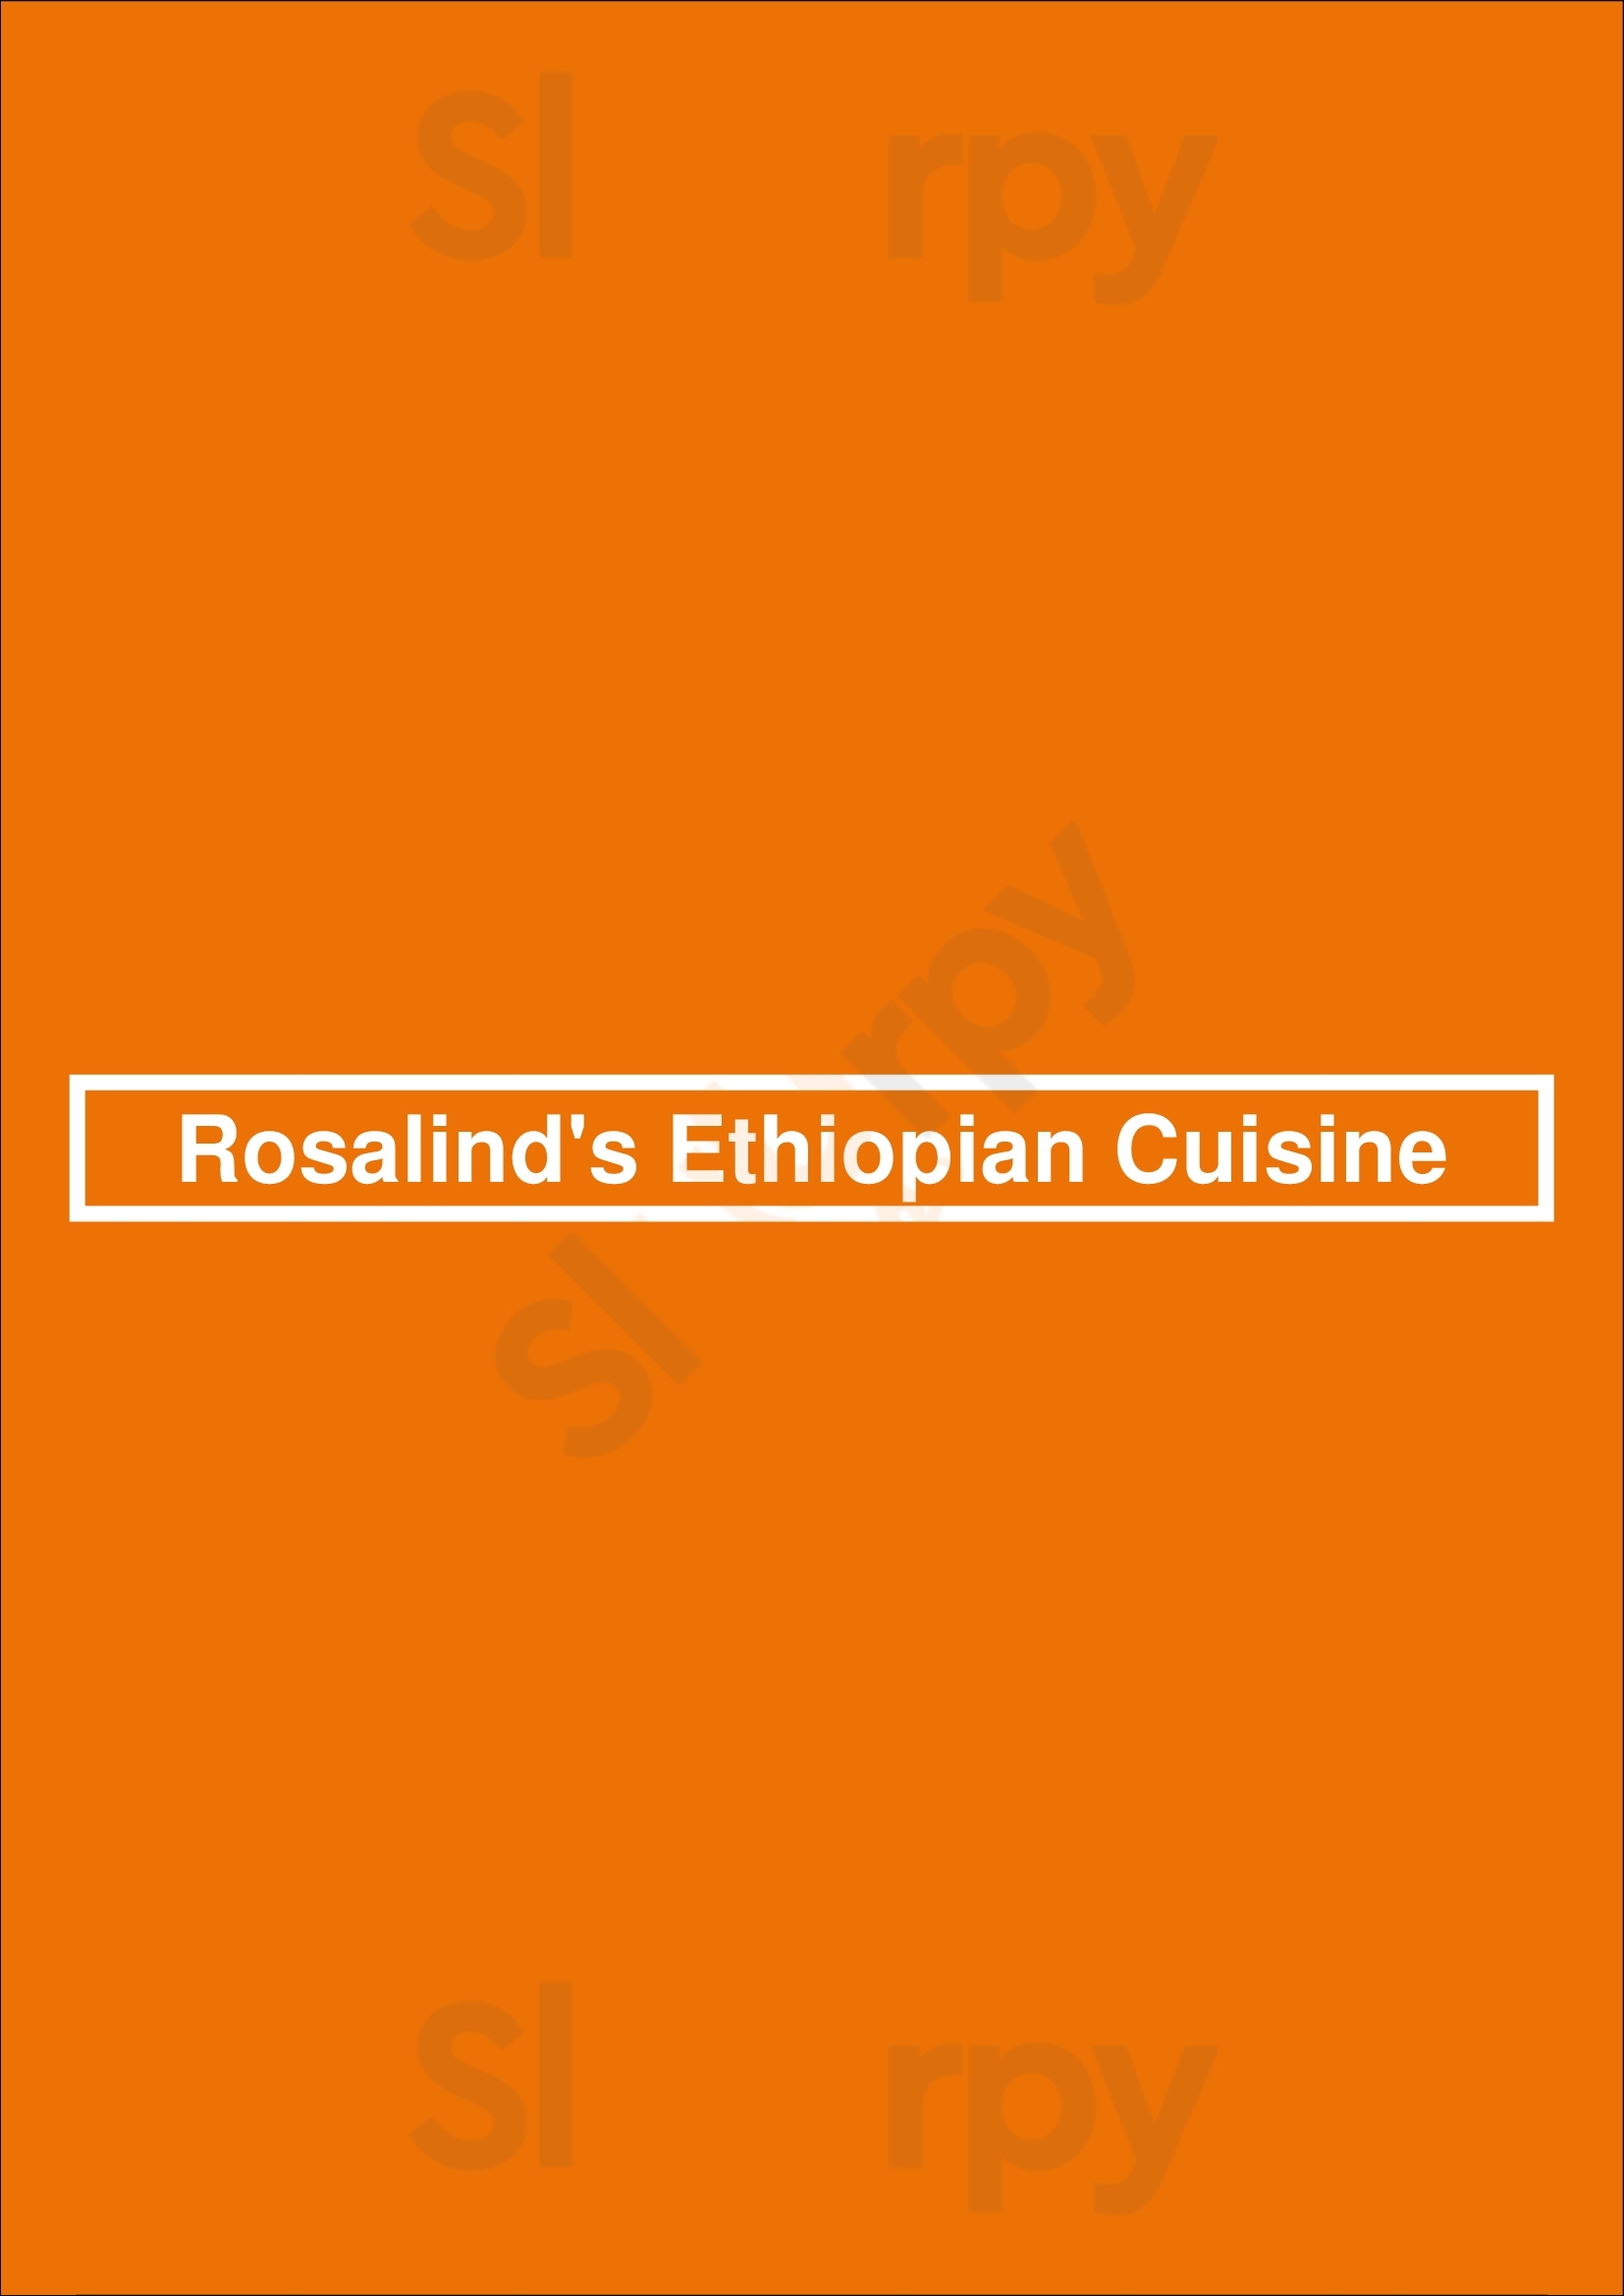 Rosalind's Ethiopian Cuisine Los Angeles Menu - 1